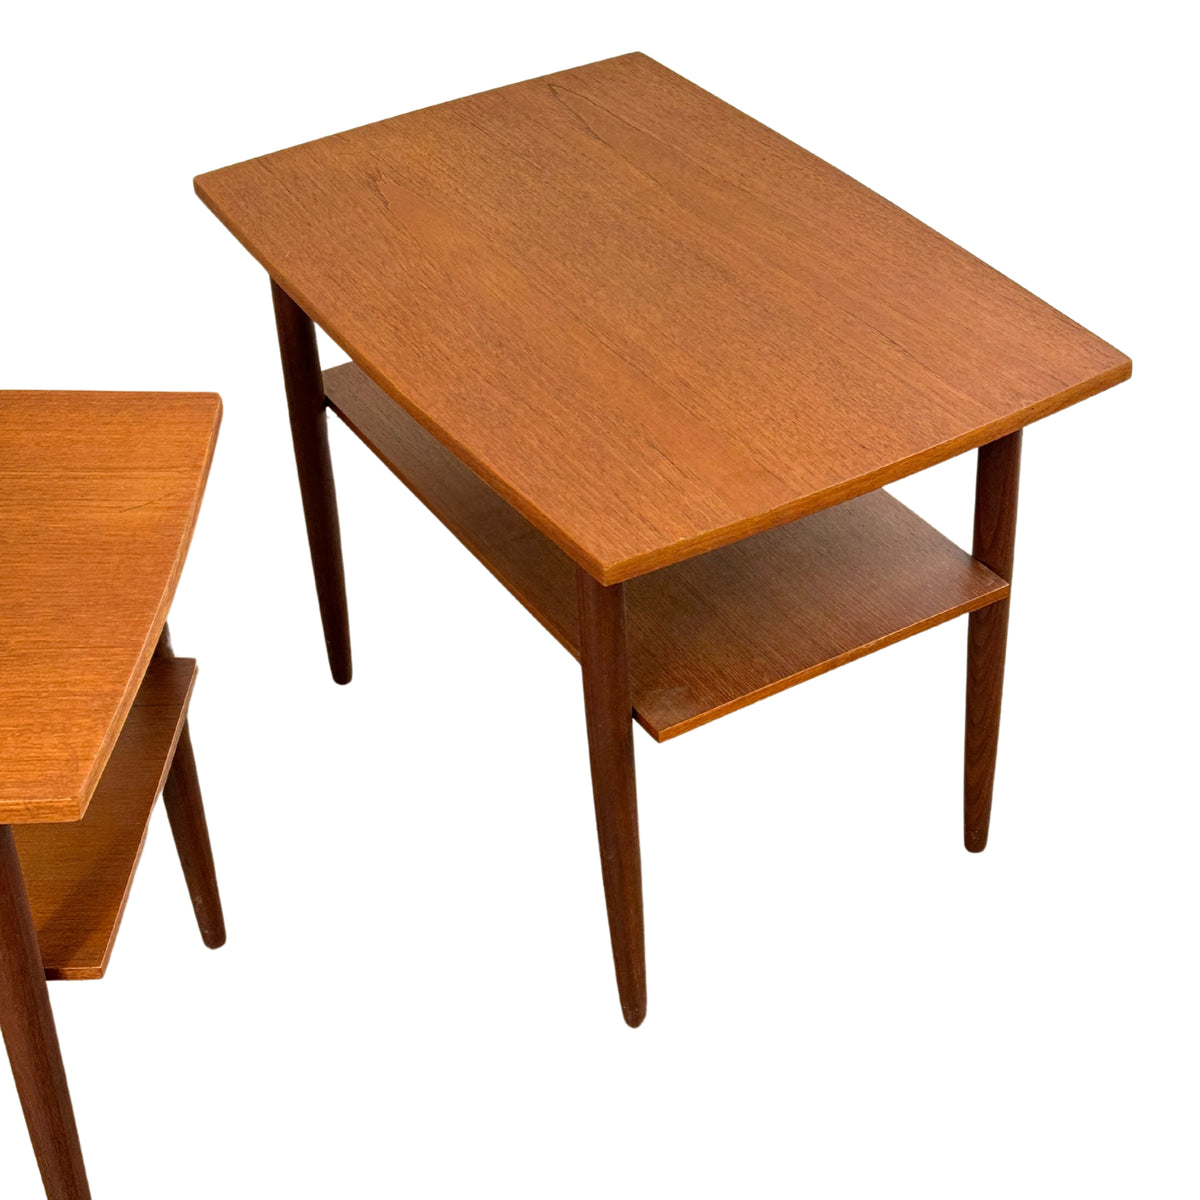 Pair of Teak Side Tables